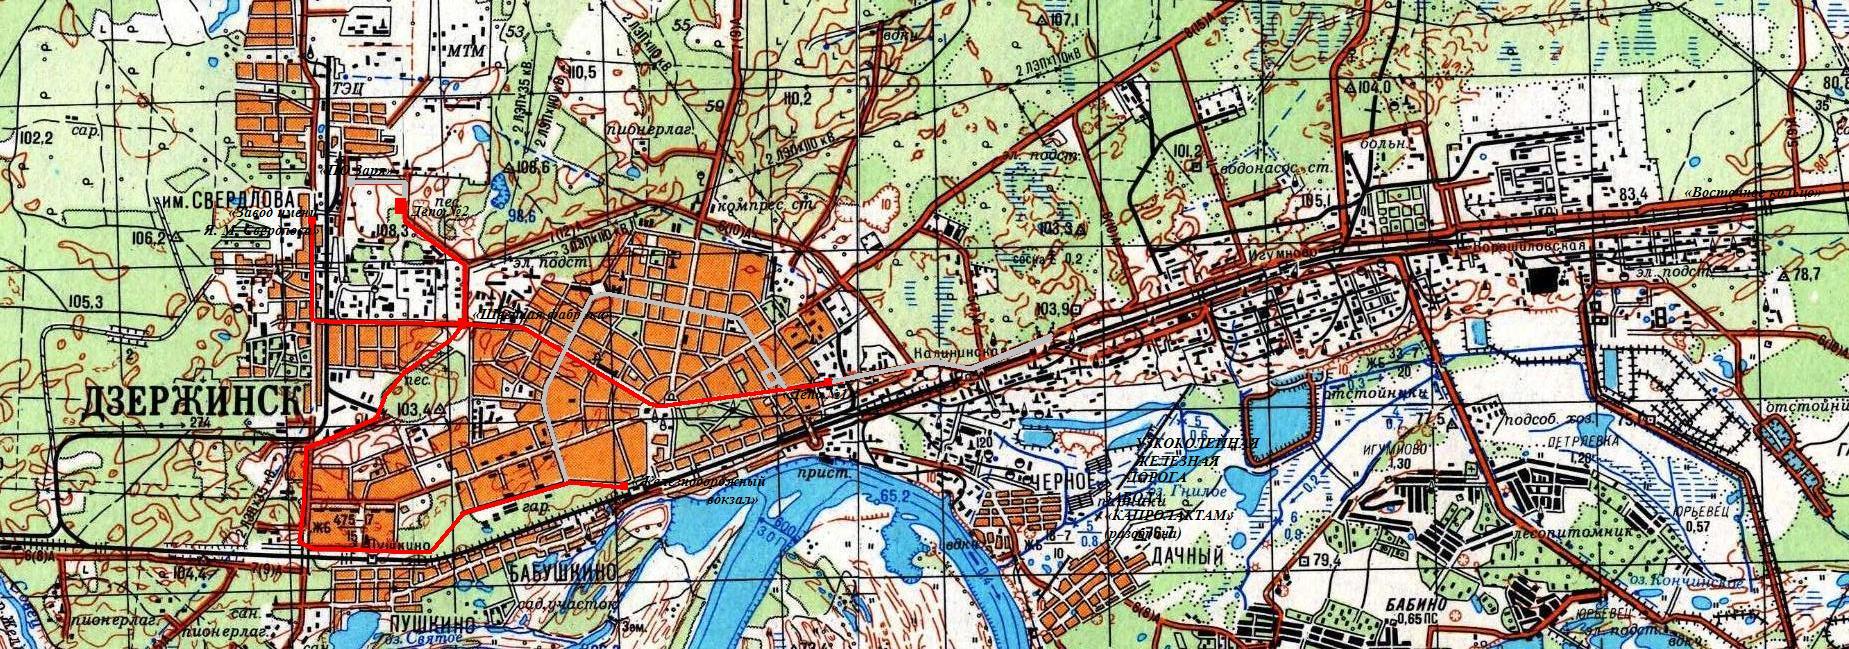 Дзержинский трамвай  — схемы и  топографические карты